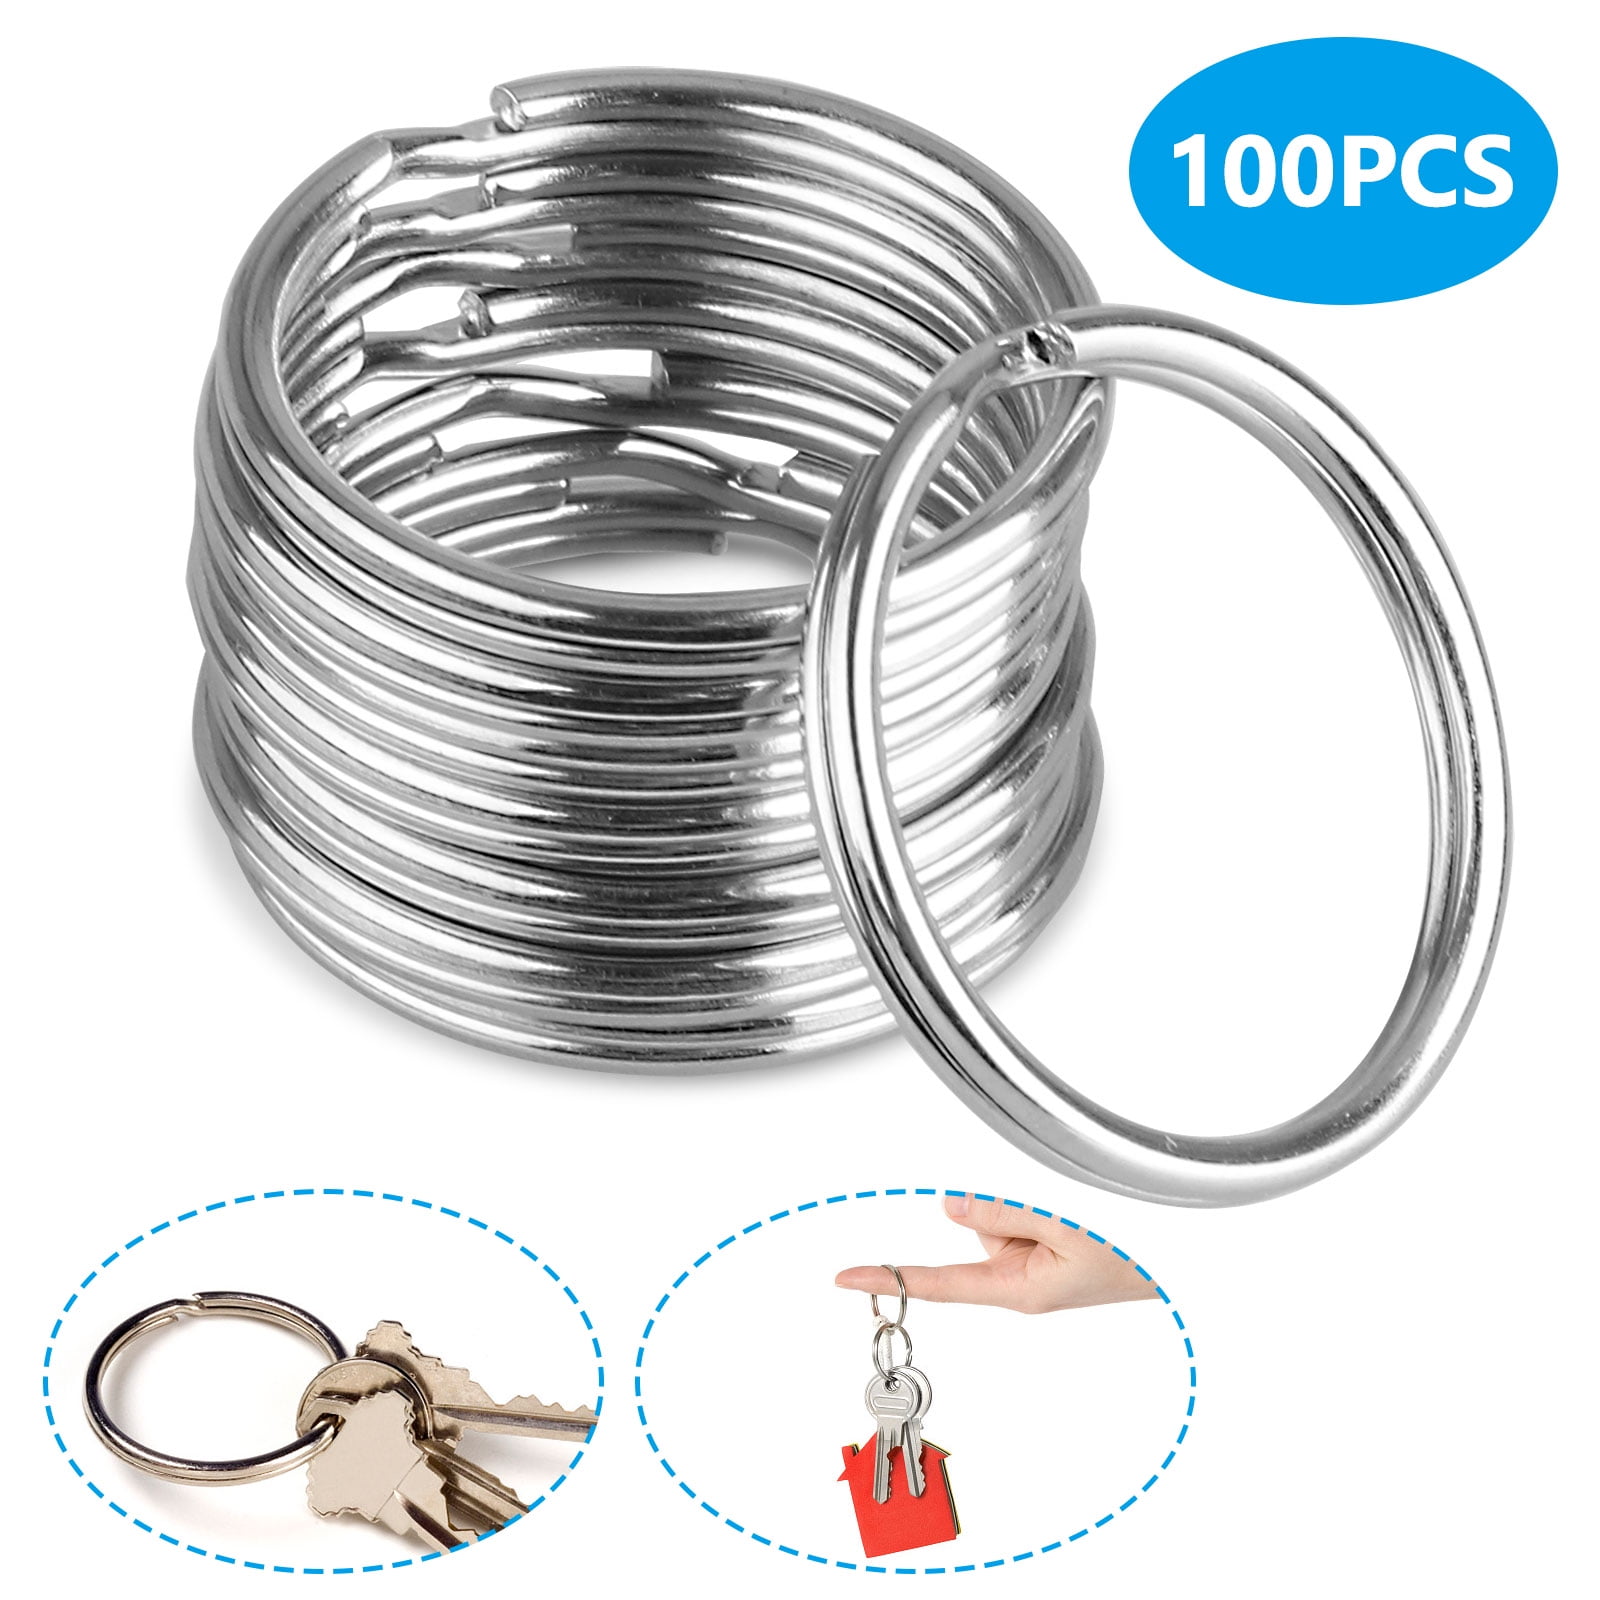 100PCS Silver Steel Key Rings Chains Split Ring Hoop Metal Loop Making 25mm OU 